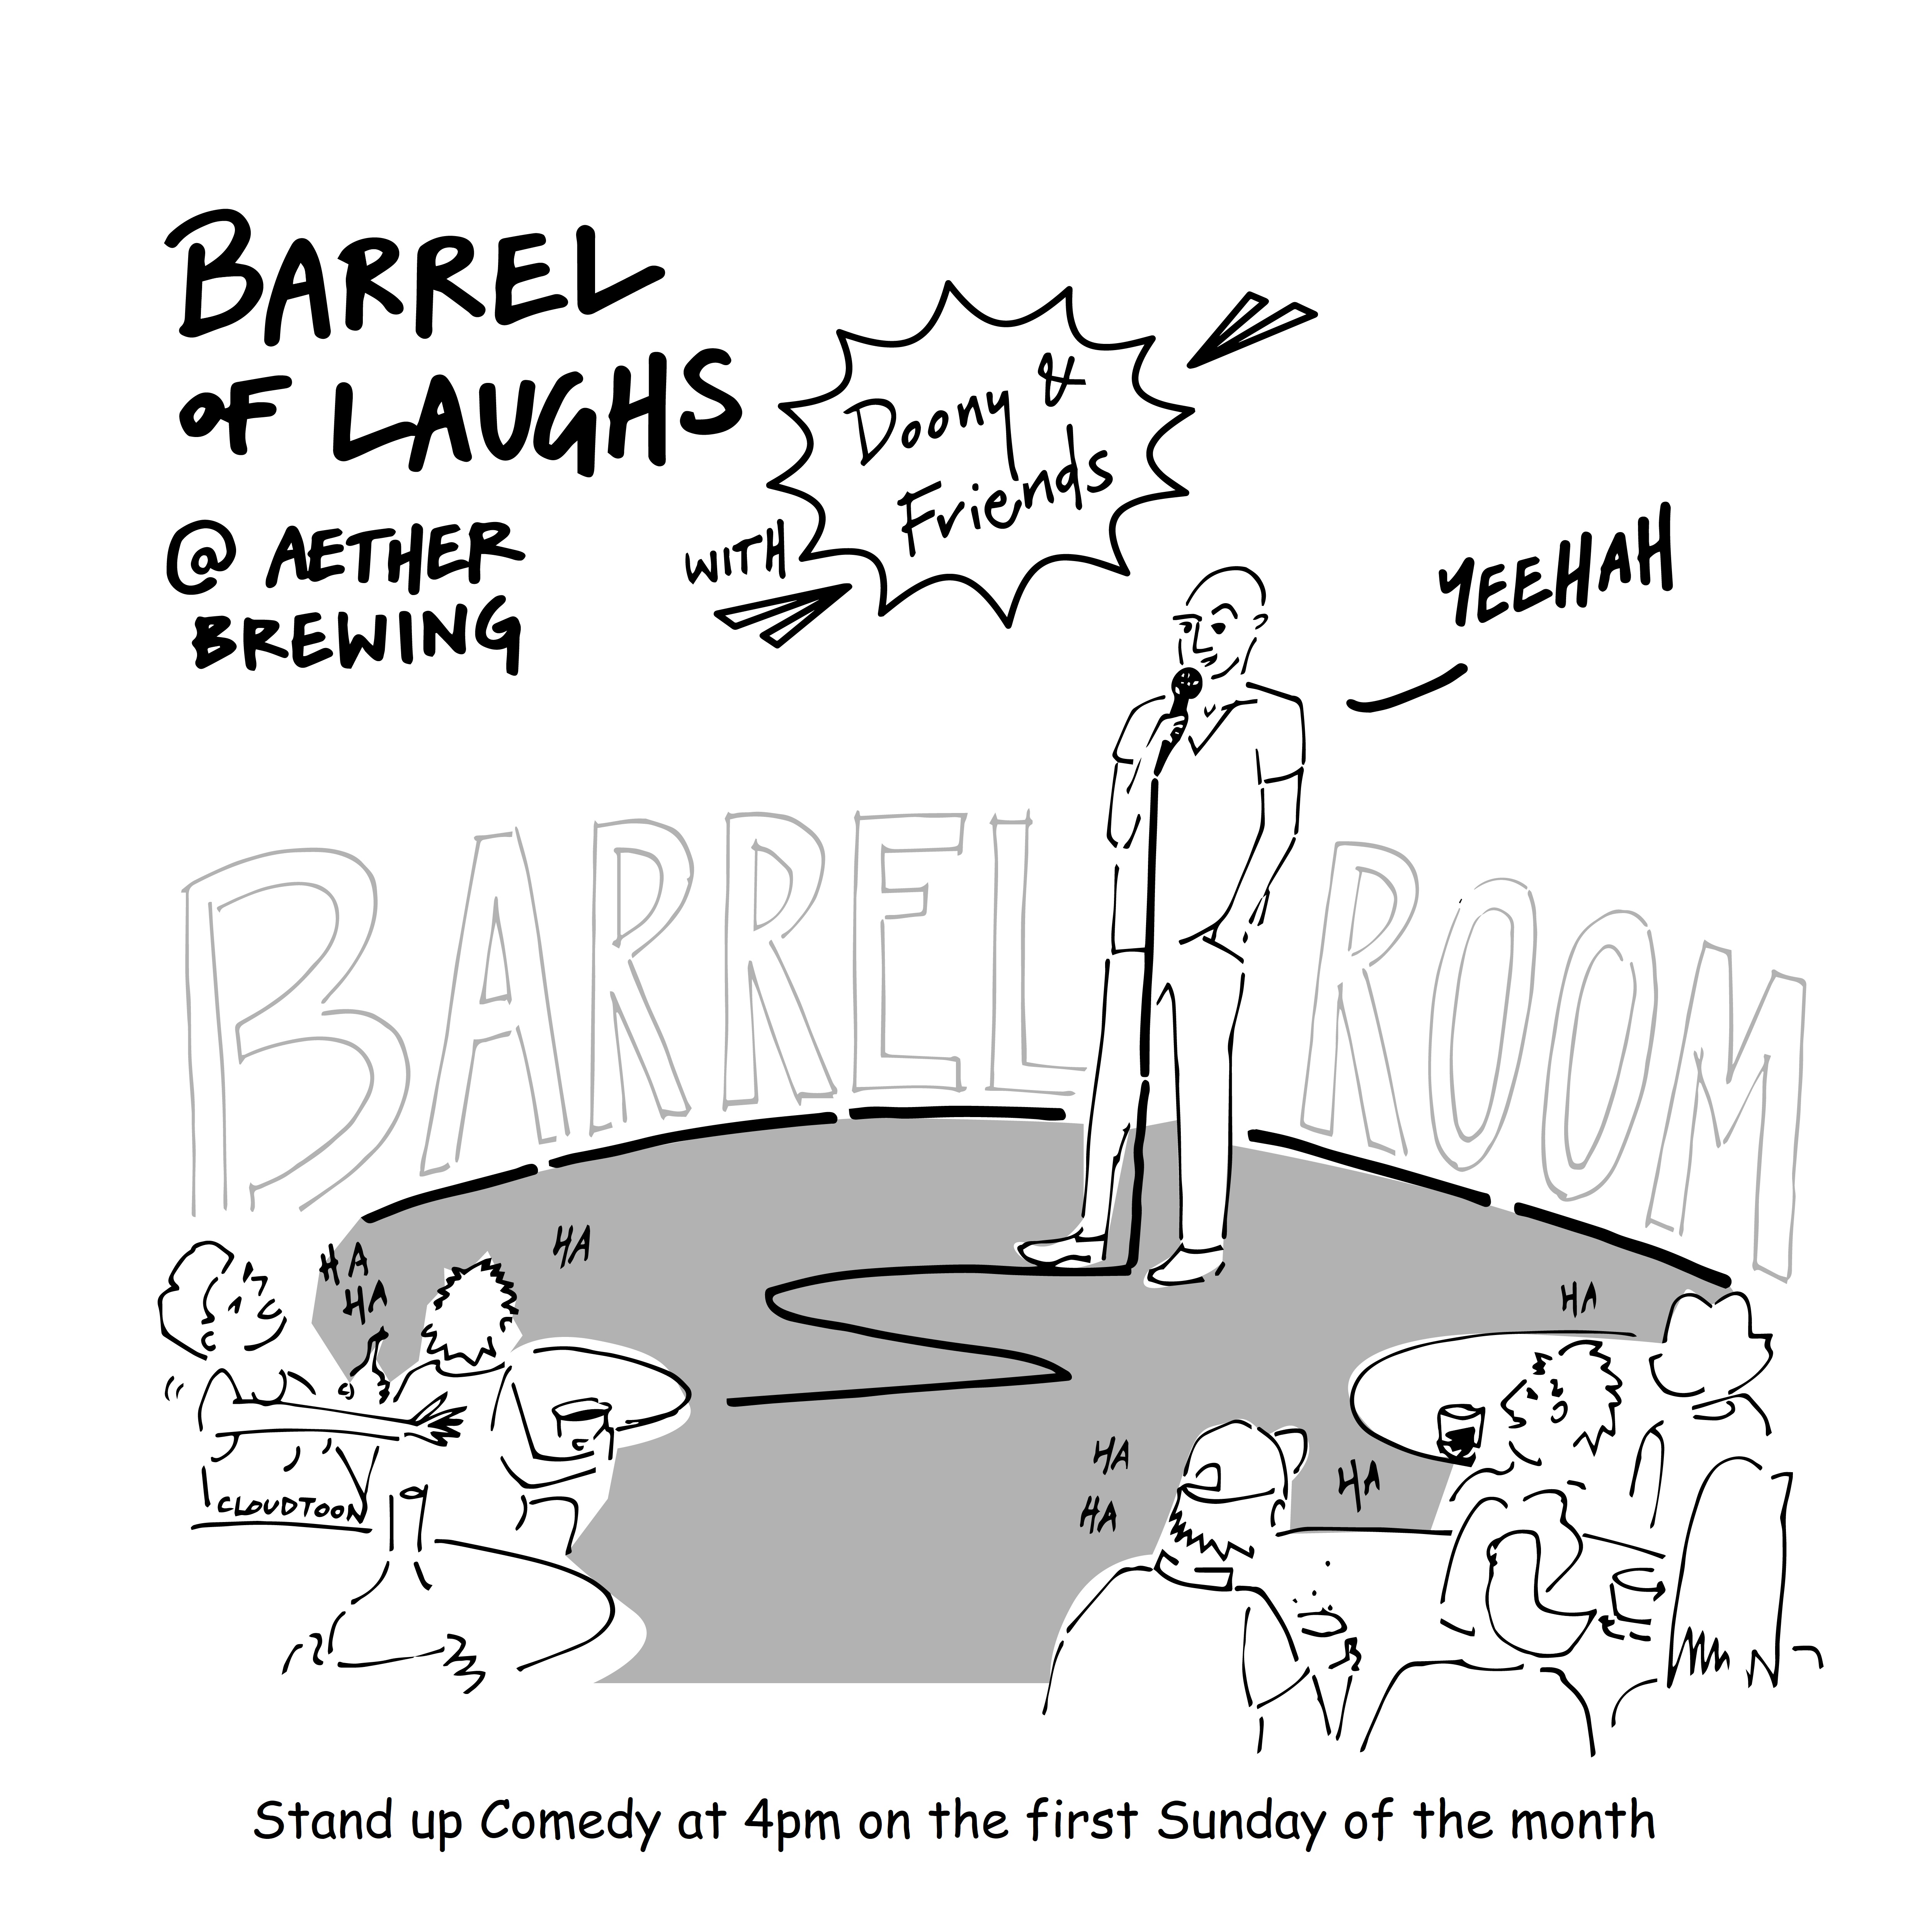 Barrel of Laughs